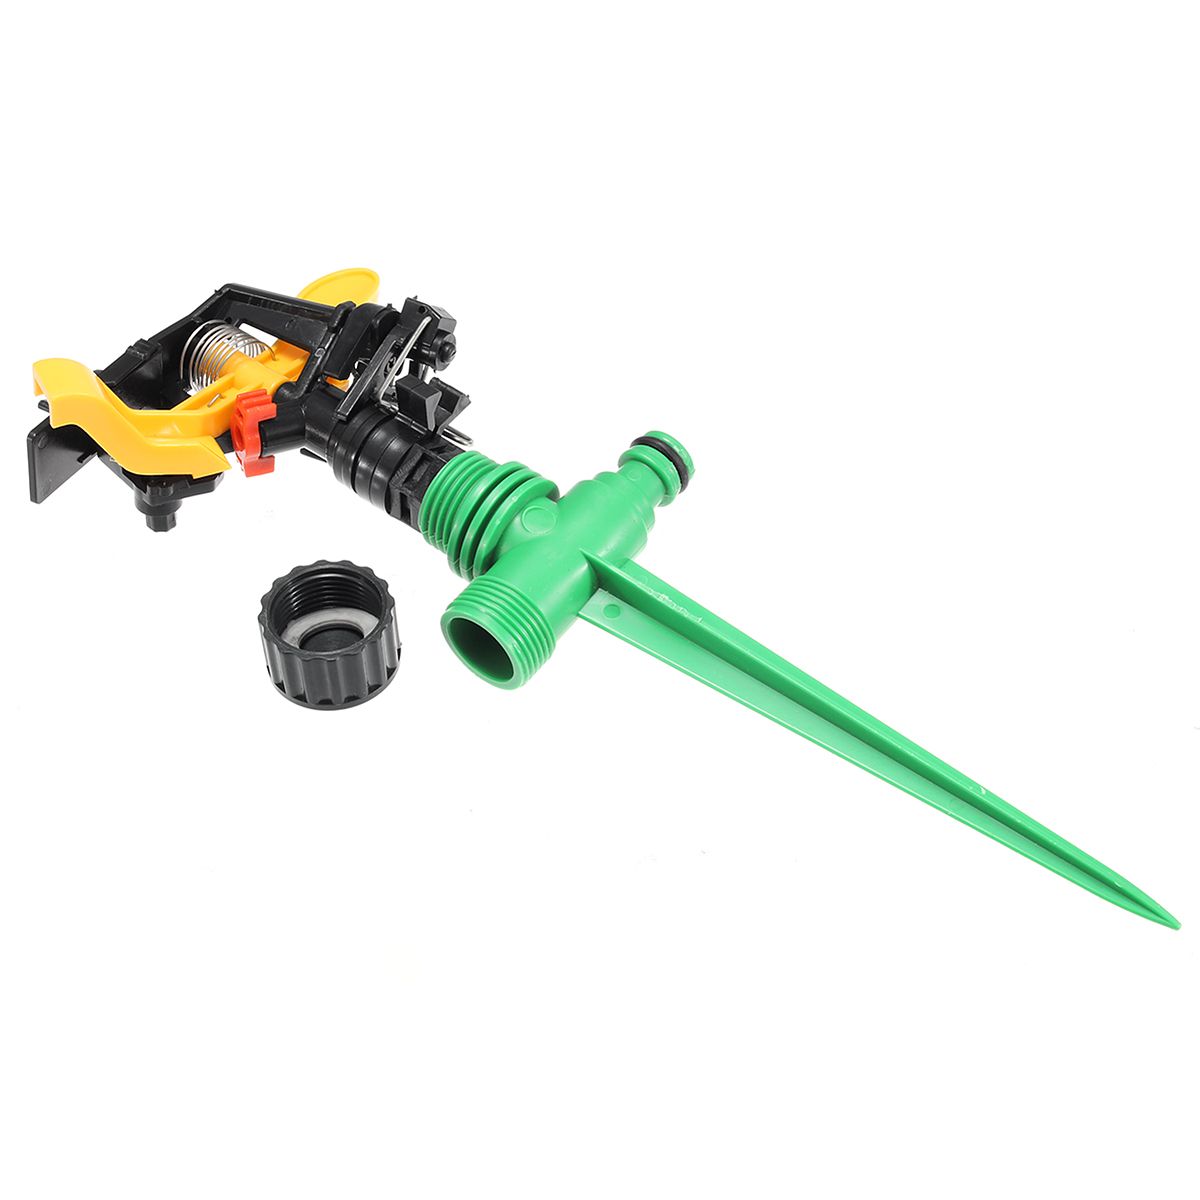 12-360deg-Rotary-Plastic-Irrigation-Sprayer-Sprinkler-For-Home-Garden-Yard-Lawn-1310247